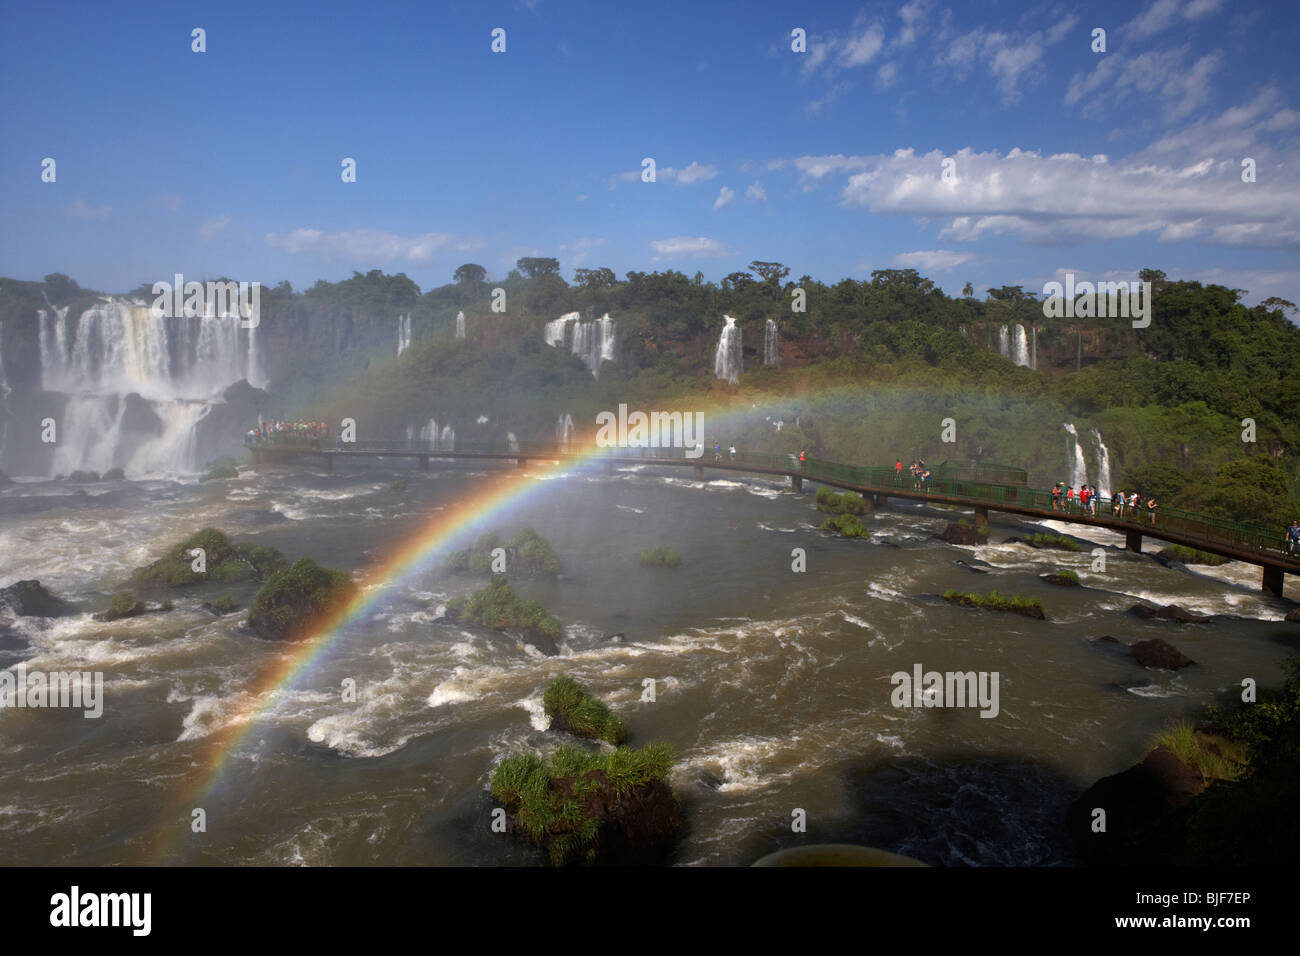 L'eau s'écoule plus d'Iguazu avec les touristes en promenade et rainbow Iguaçu côté brésilien parc national, l'État de Parana, Brésil Banque D'Images